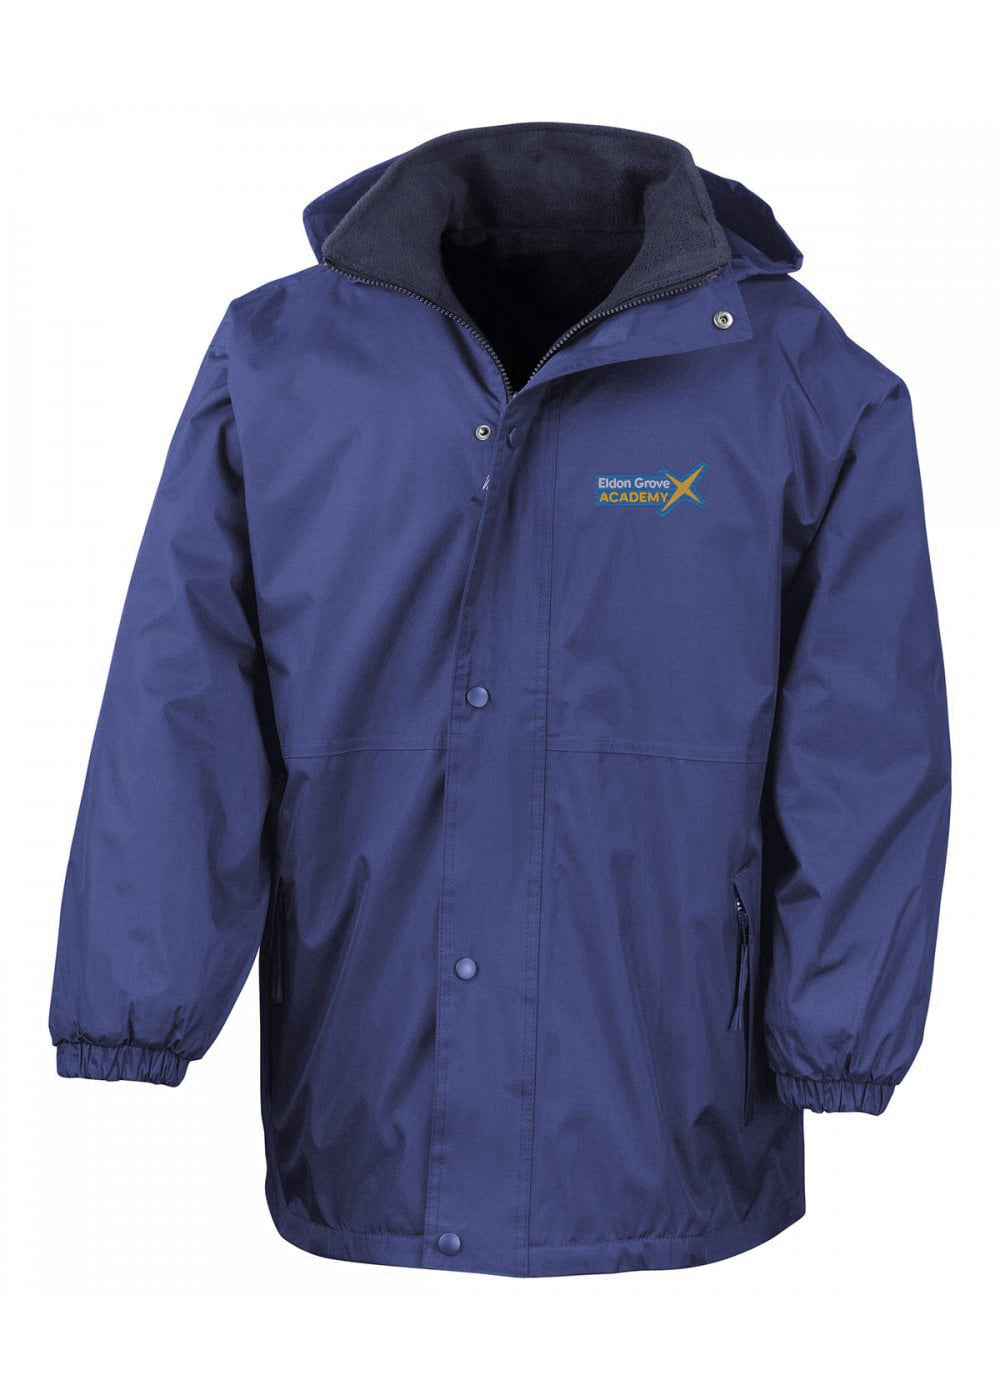 Eldon Grove Royal Blue Winter Storm Jacket